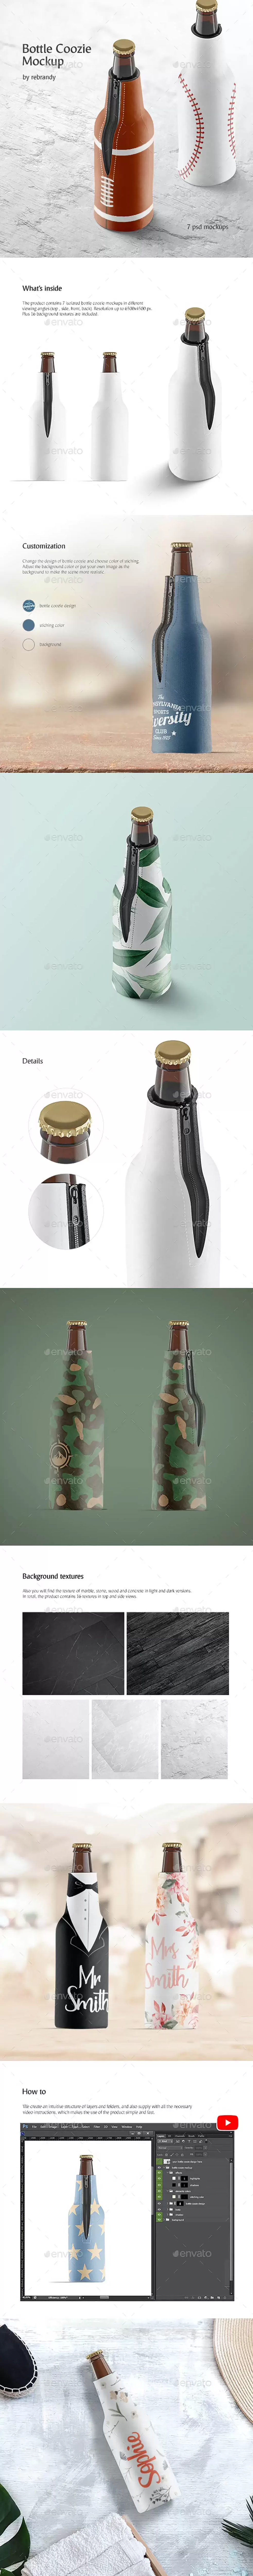 玻璃酒瓶橡胶外壳包装图案设计样机 (psd)免费下载插图